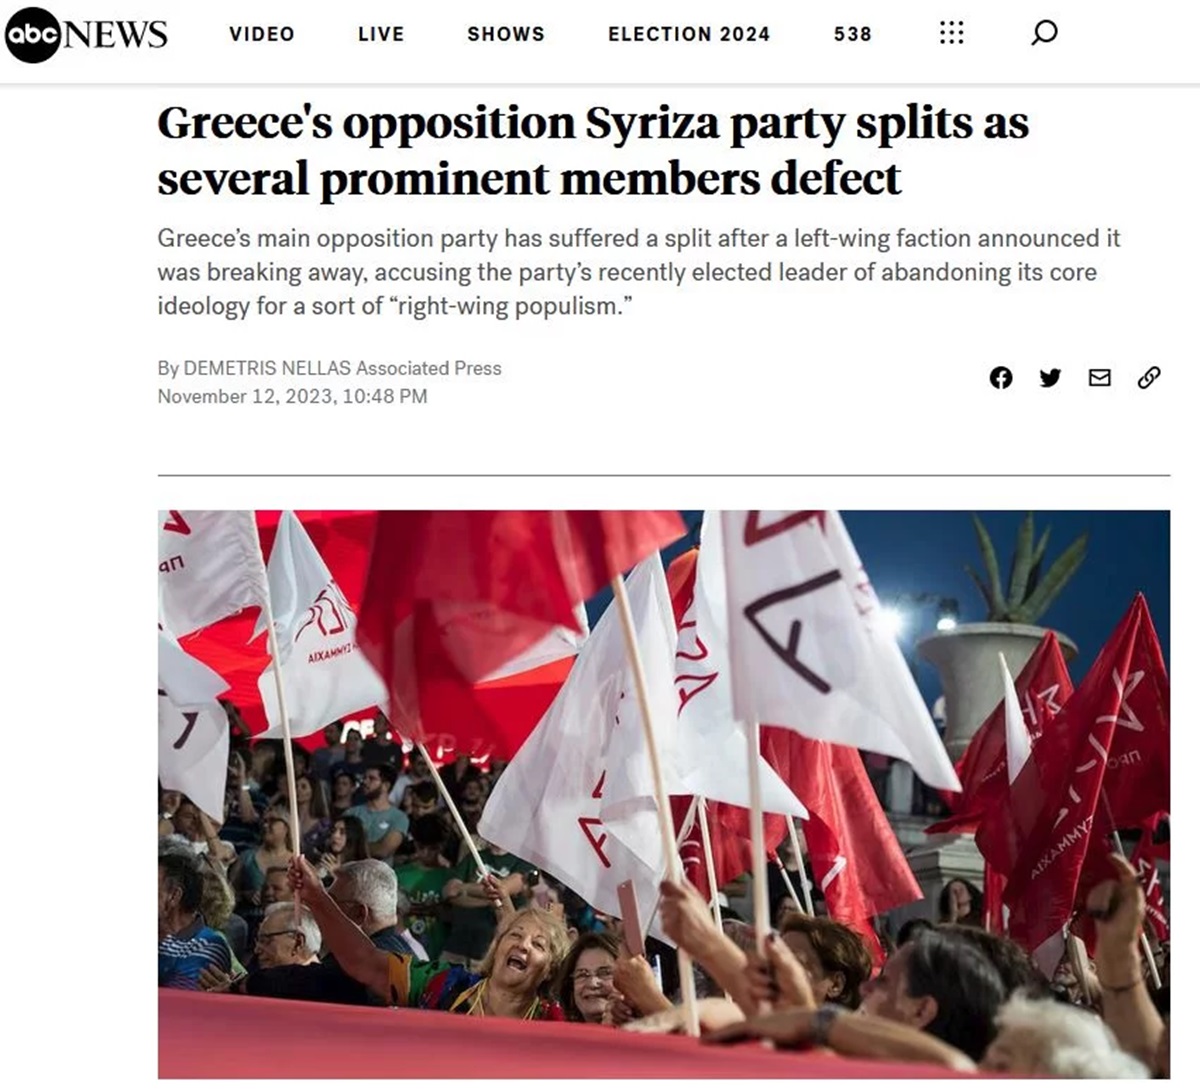 ΣΥΡΙΖΑ ASSOCIATED PRESS